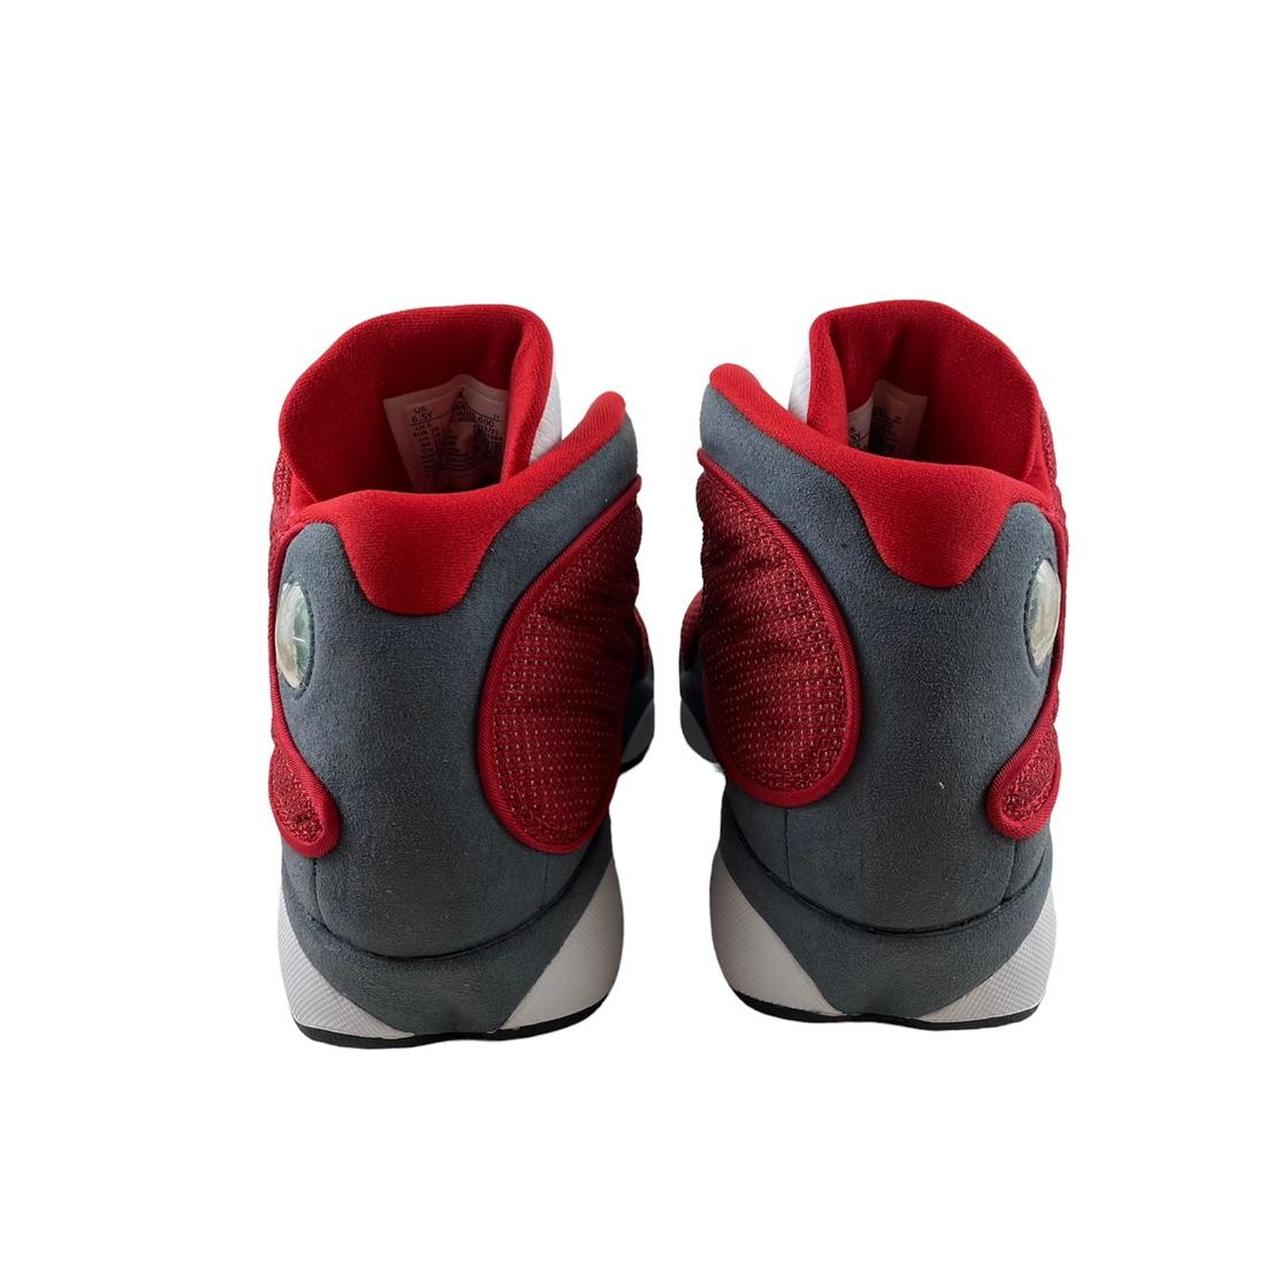 Jordan Retro 13 Red Flint GS 6.5Y/8W Brand New in... - Depop